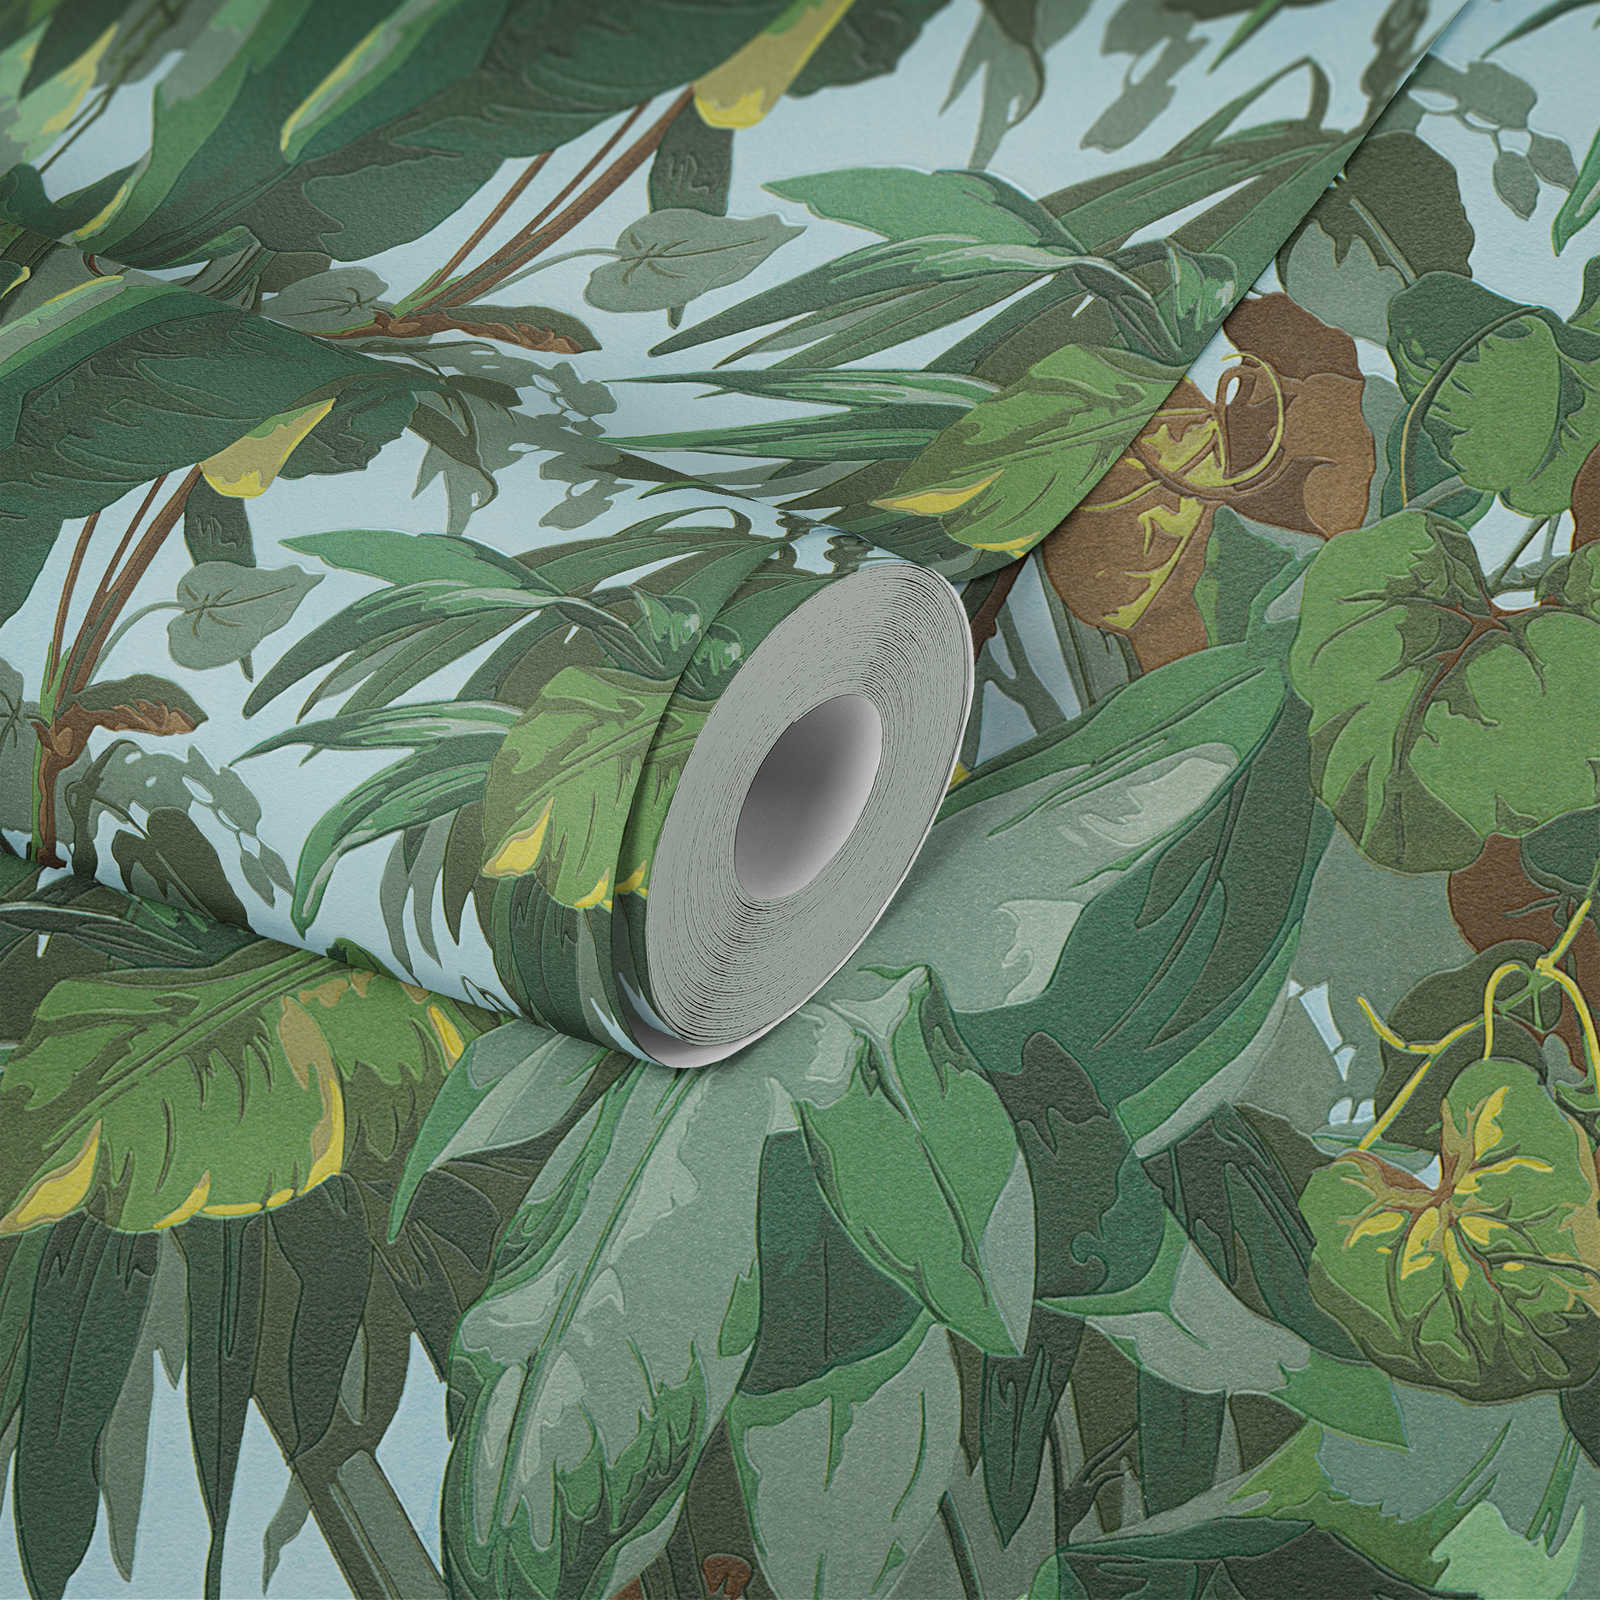             Papier peint jungle avec forêt de feuilles & fourrés verts - vert, marron
        